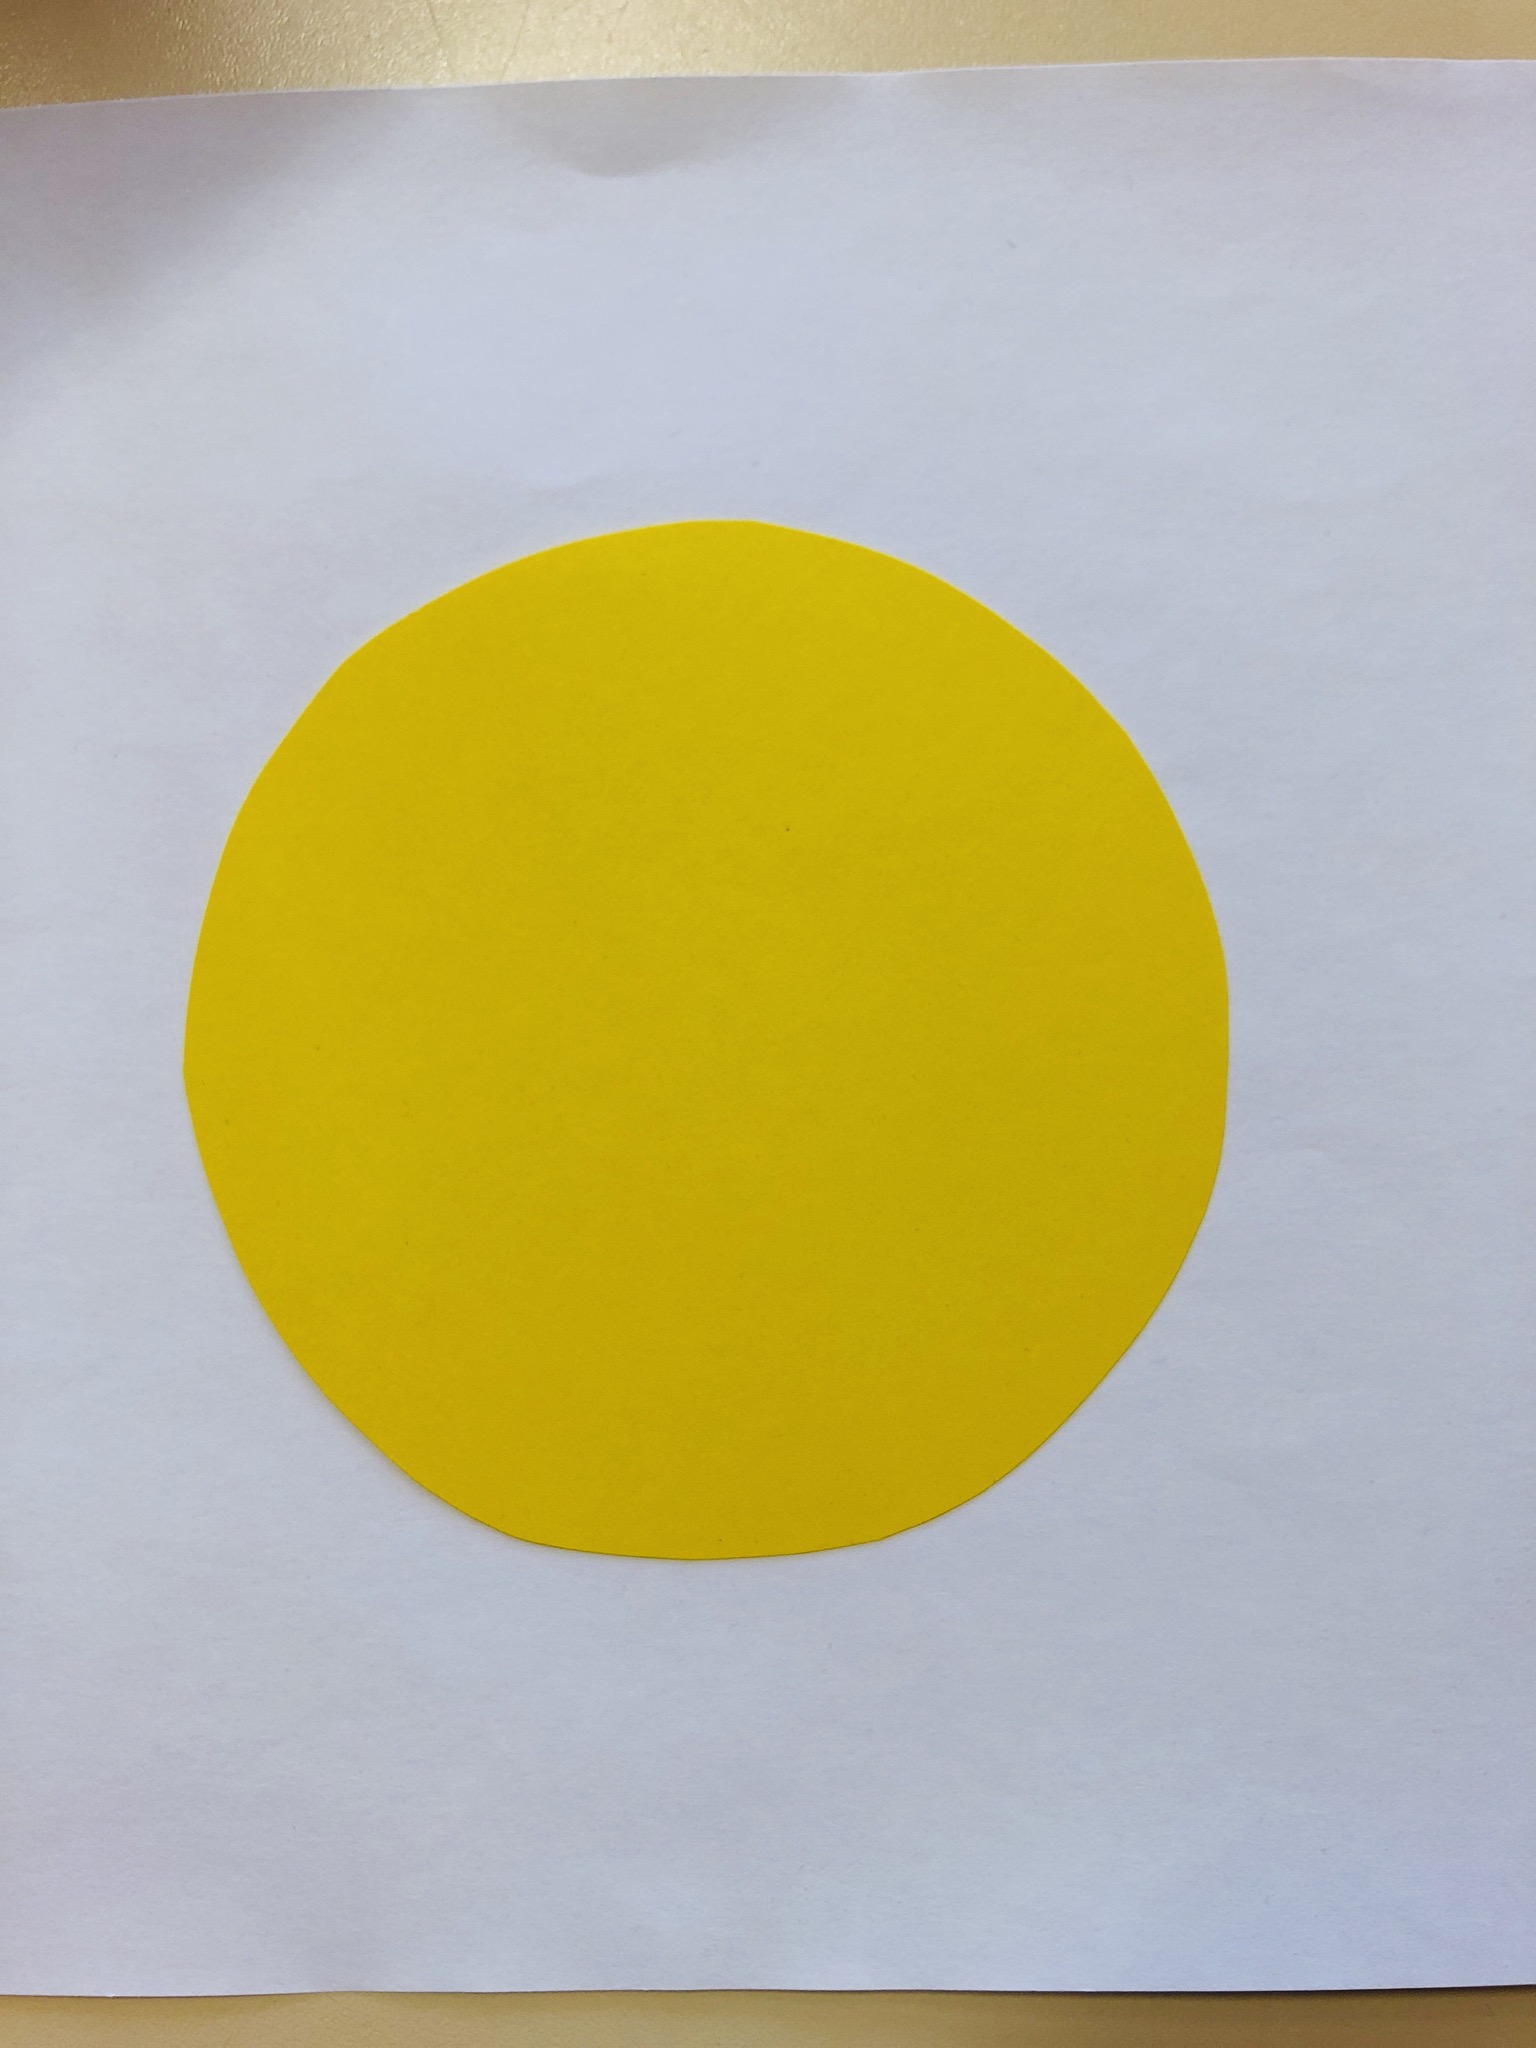 Bild zum Schritt 1 für die Kinder-Beschäftigung: 'Zeichne einen Kreis mit ca. 8 cm Durchmesser auf gelbes...'